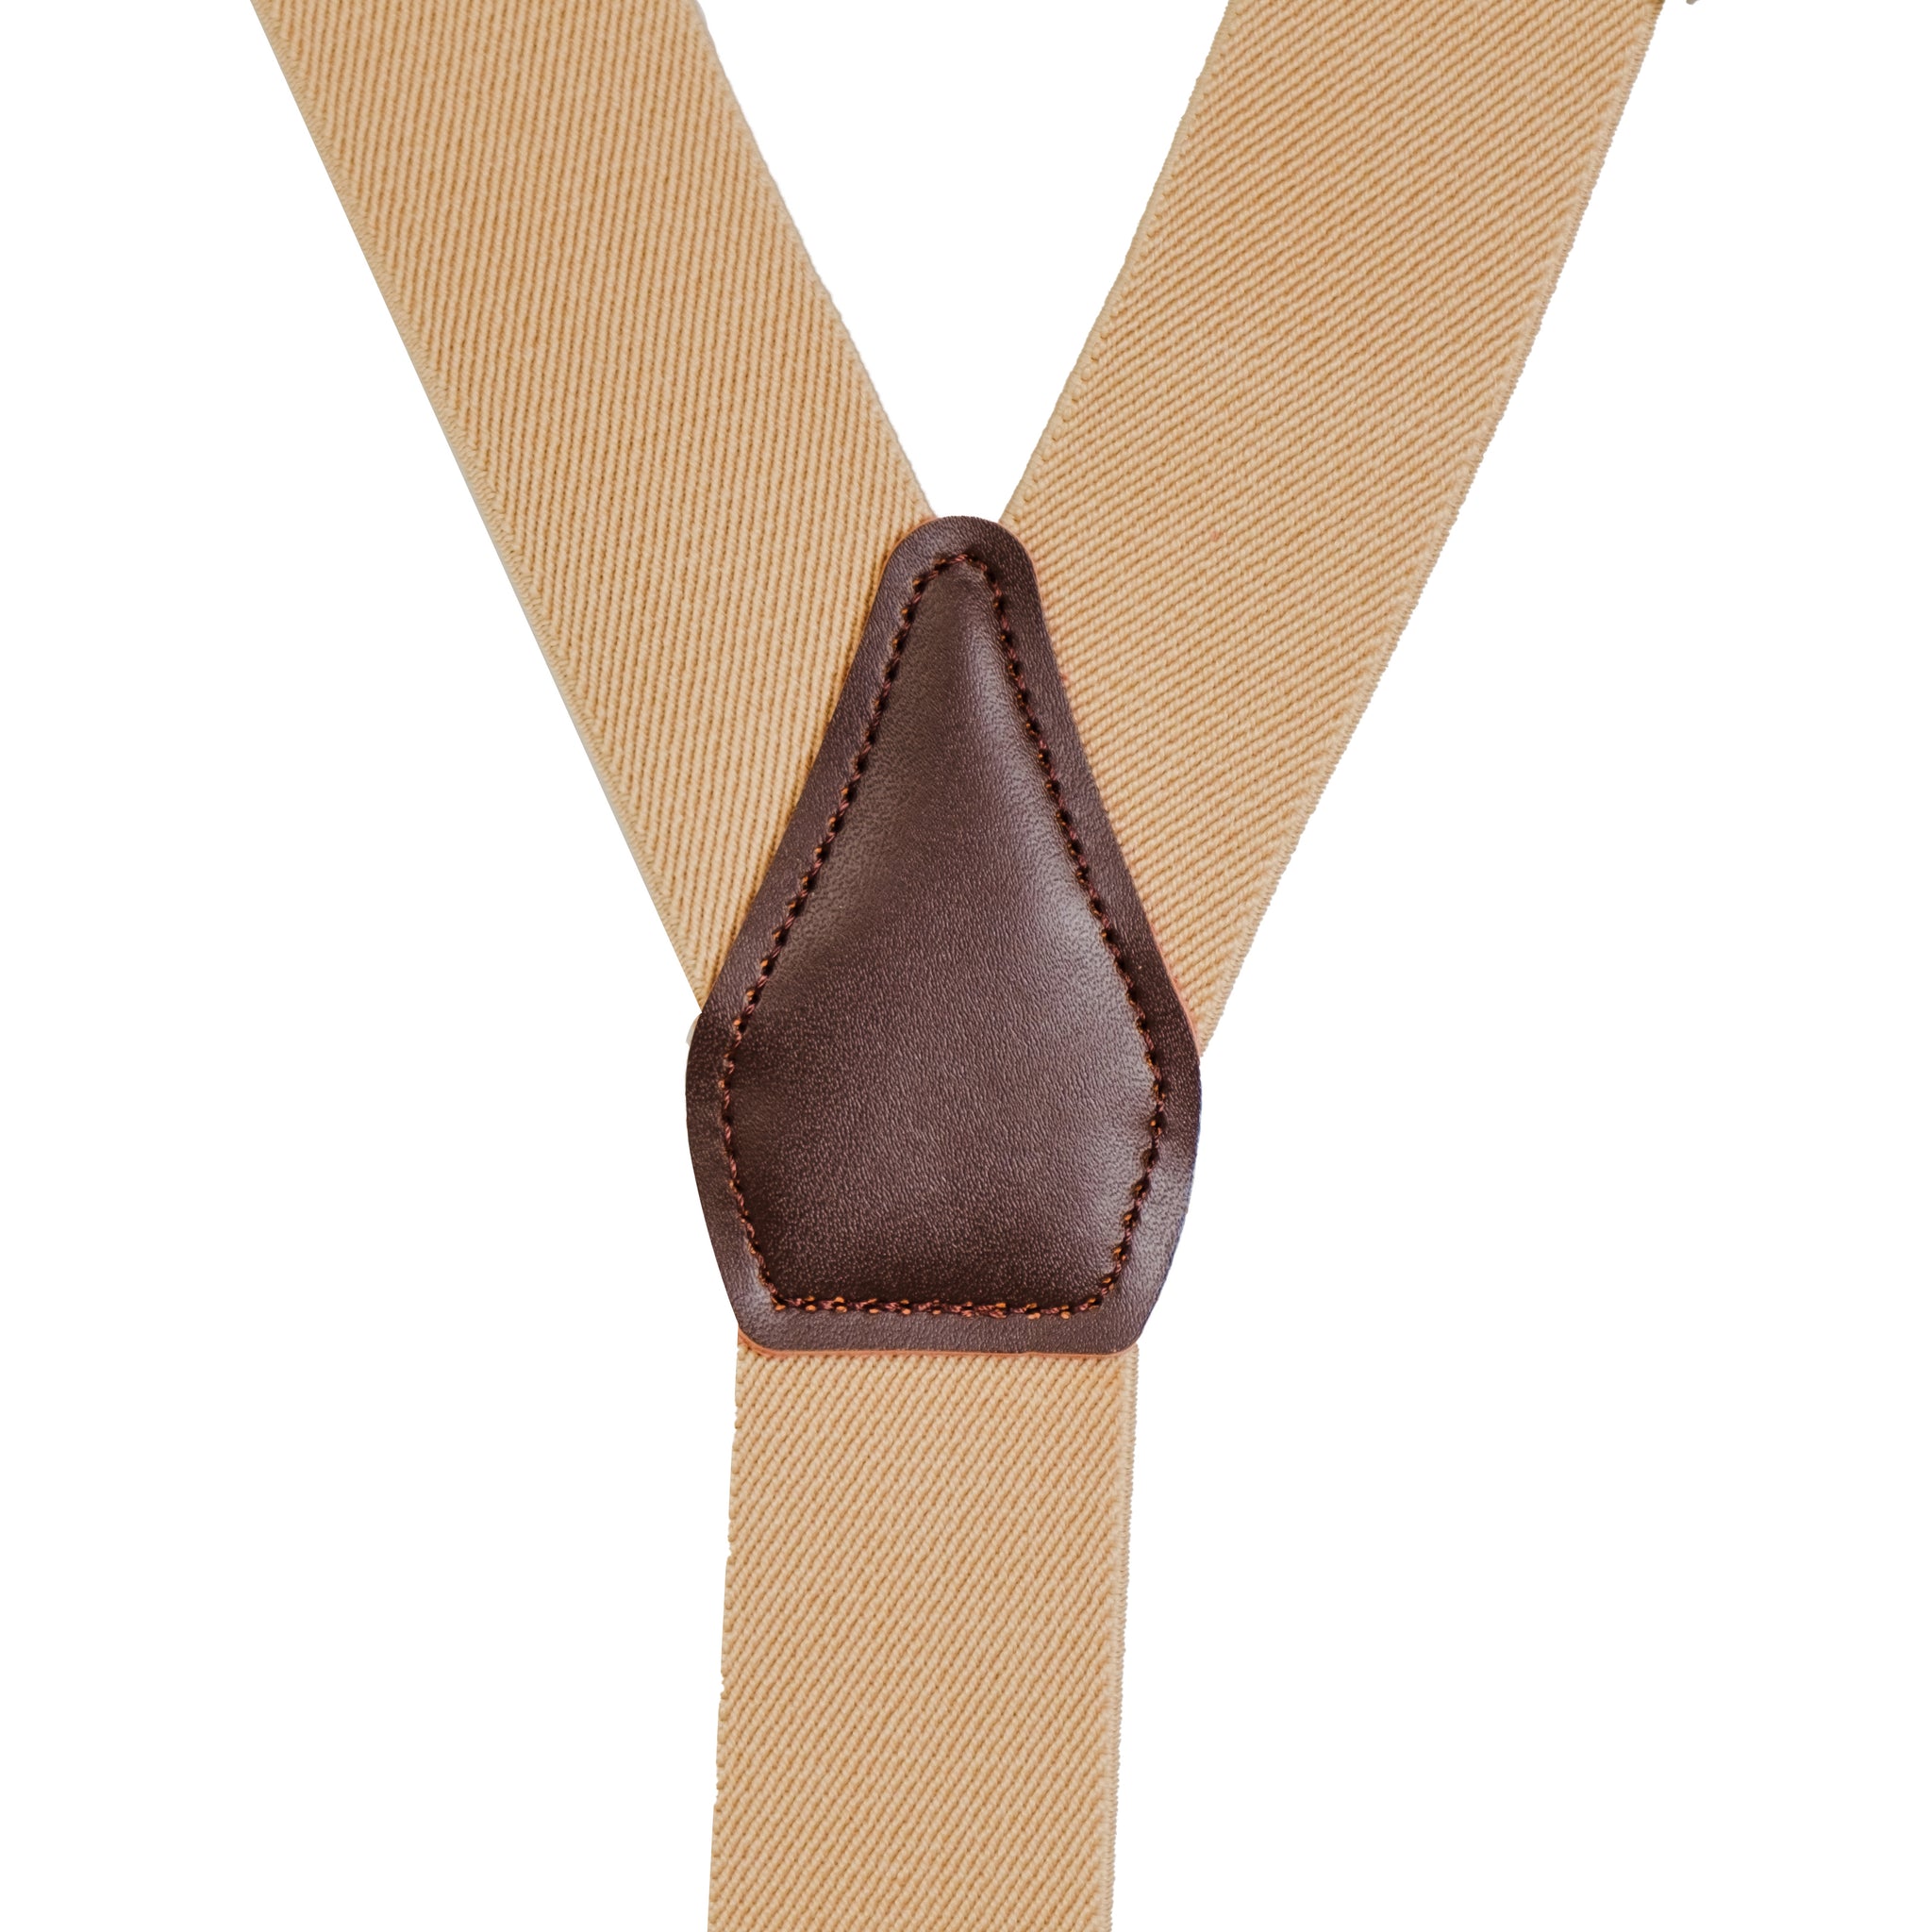 Chokore Y-shaped Elastic Suspenders for Men (Beige)